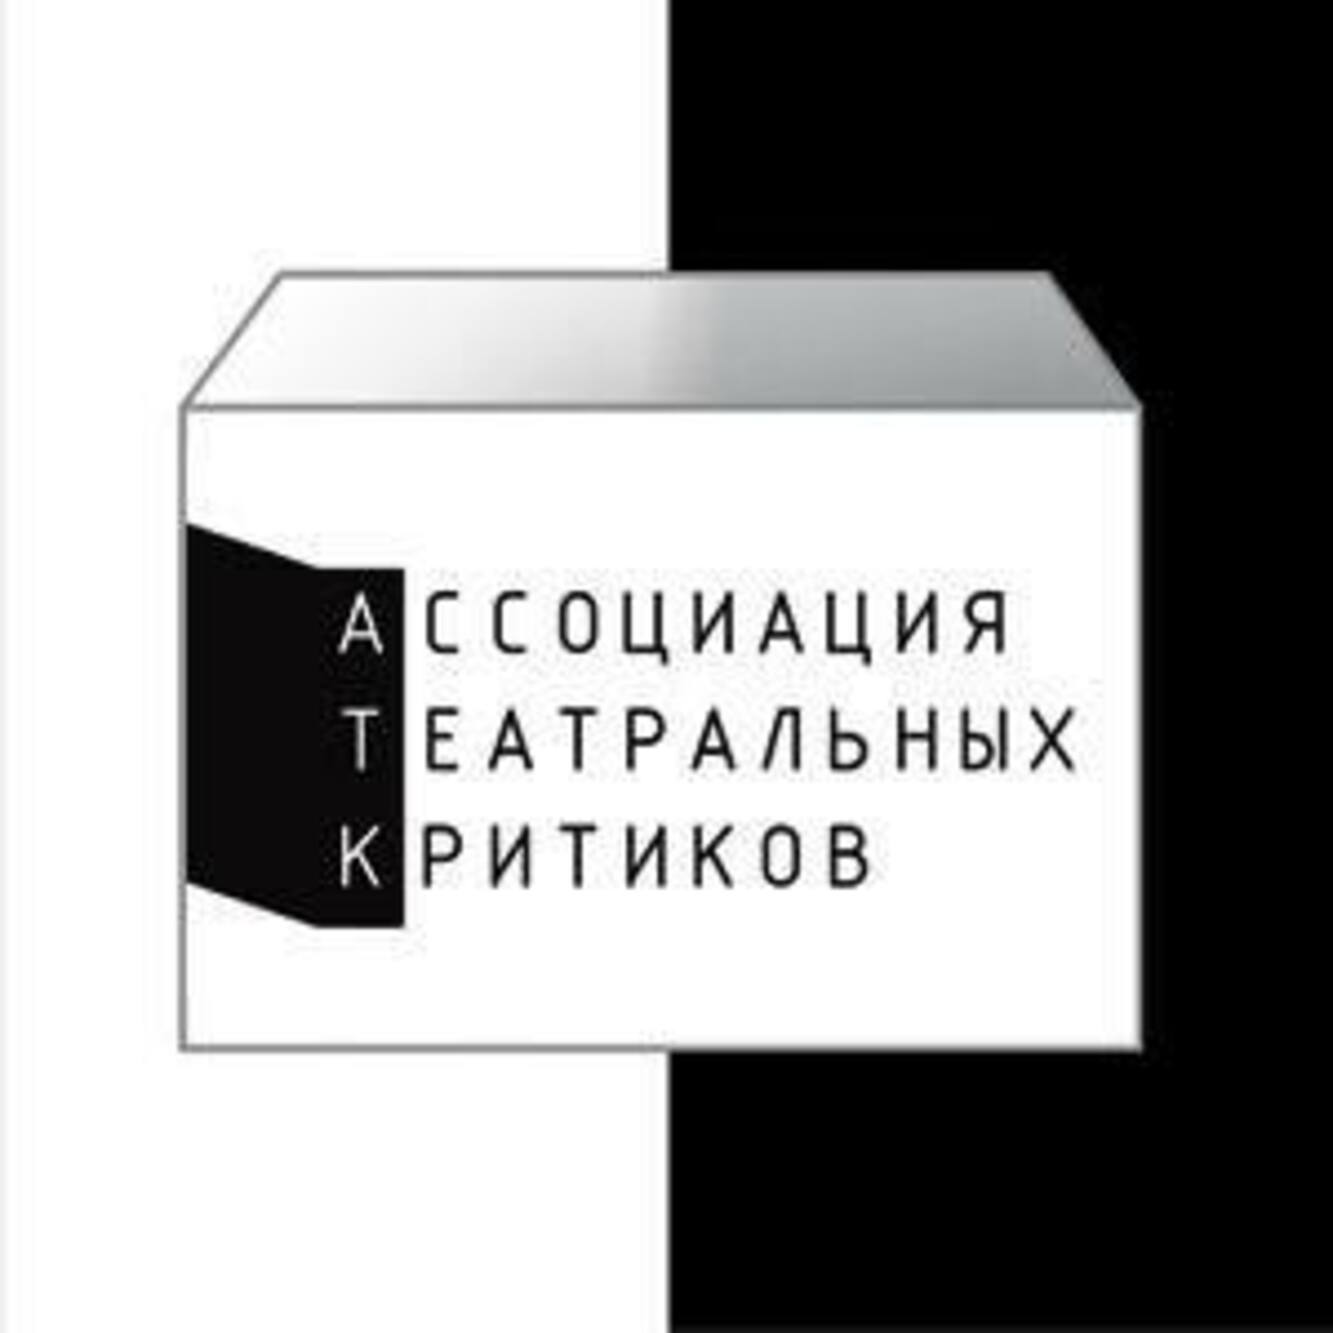 Логотип Ассоциации театральных критиков © соцсети АТК